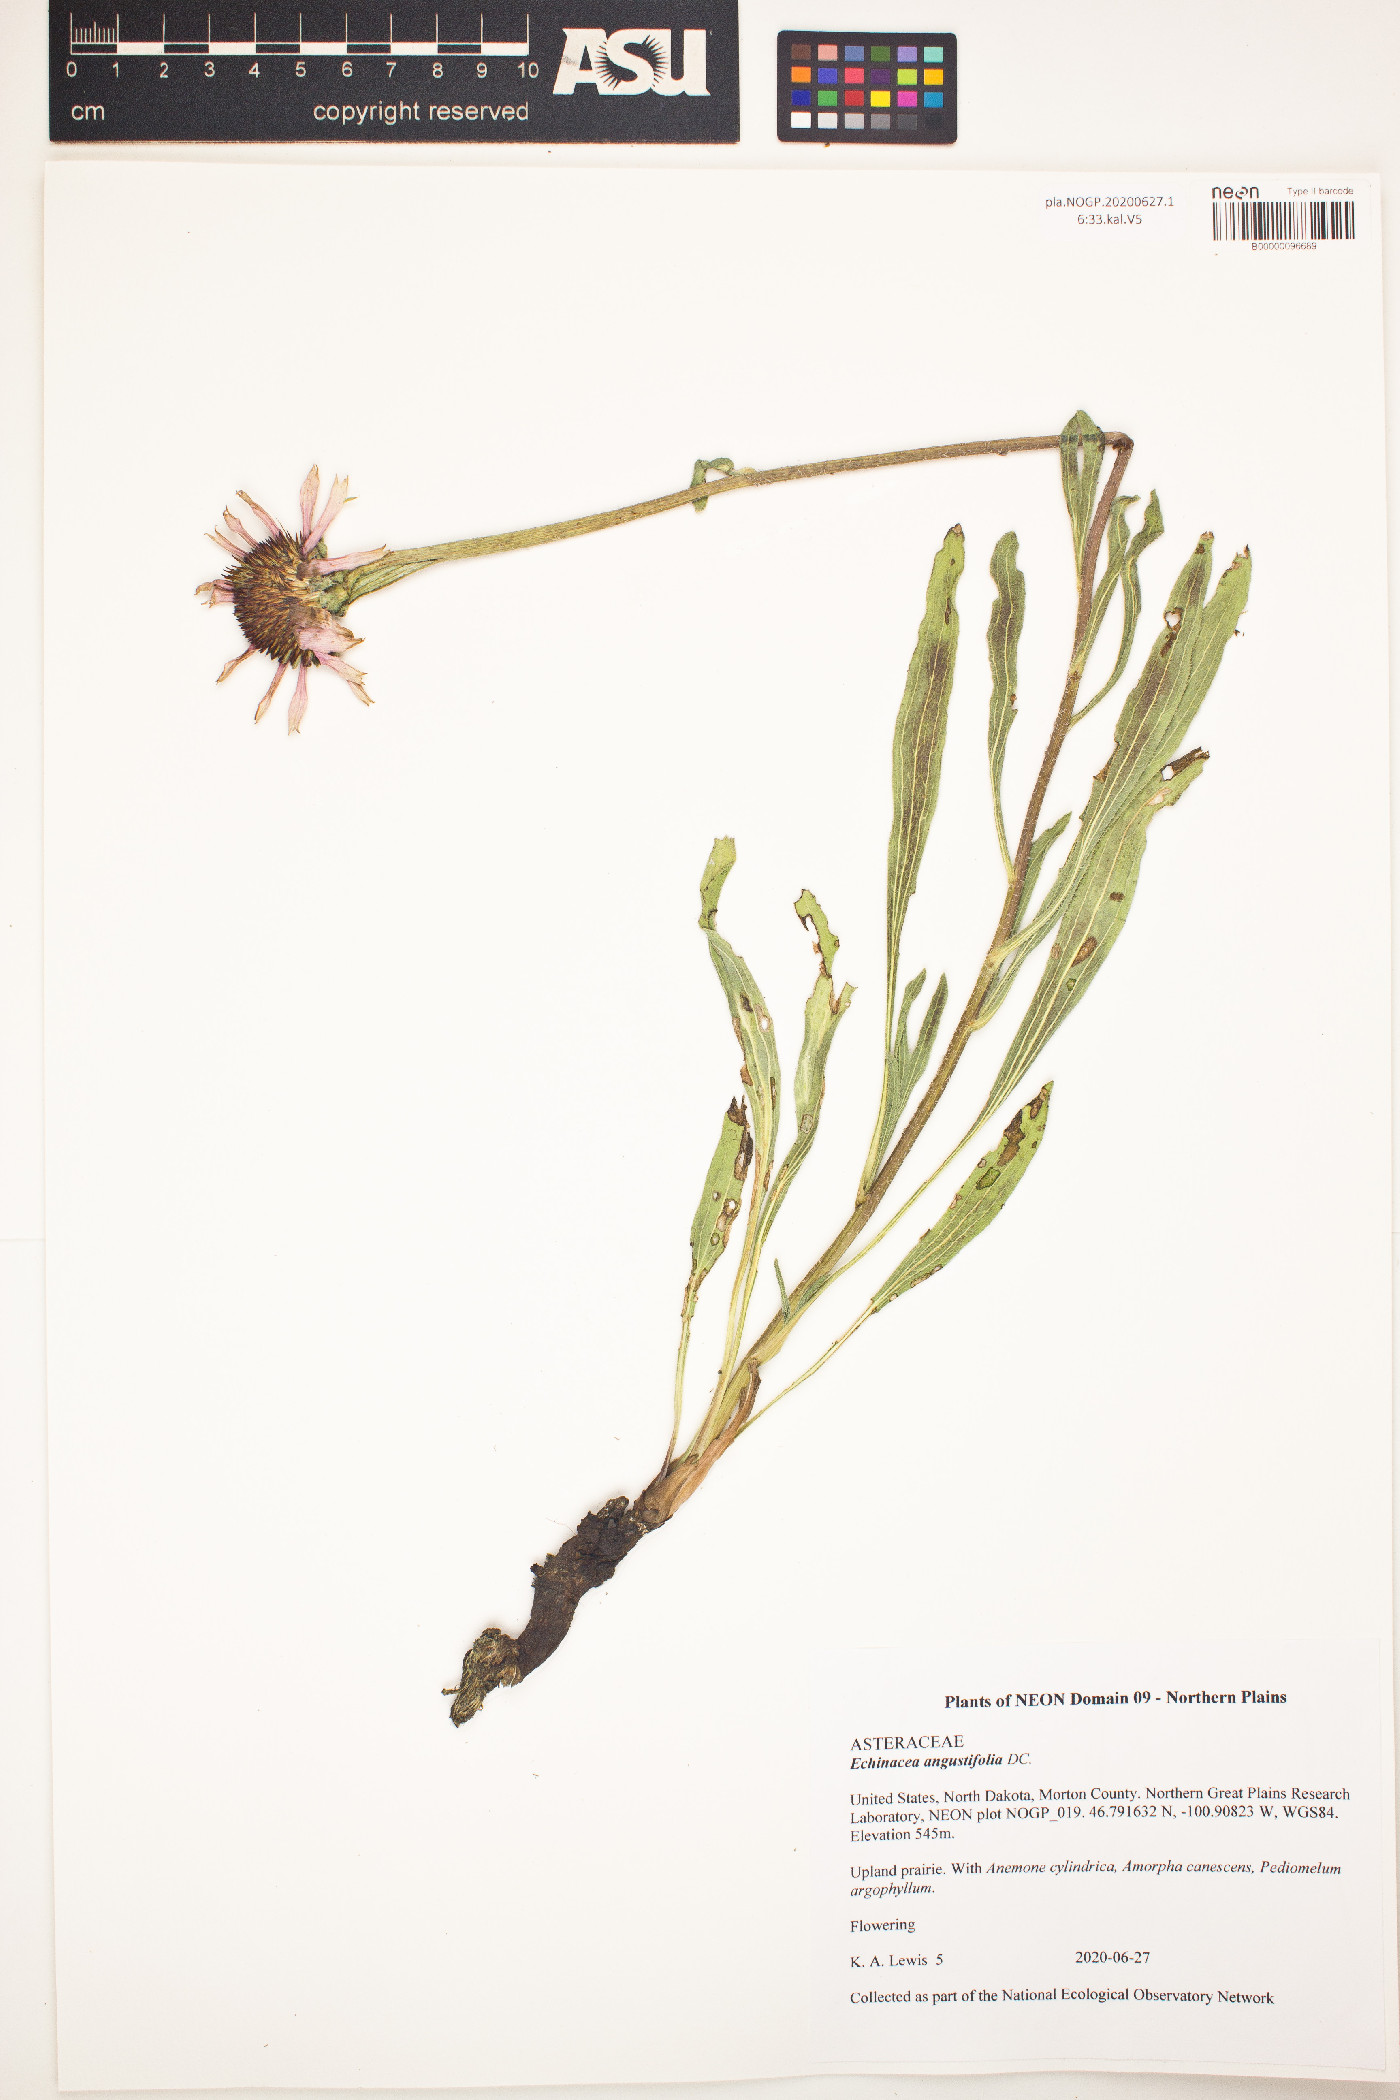 Echinacea image